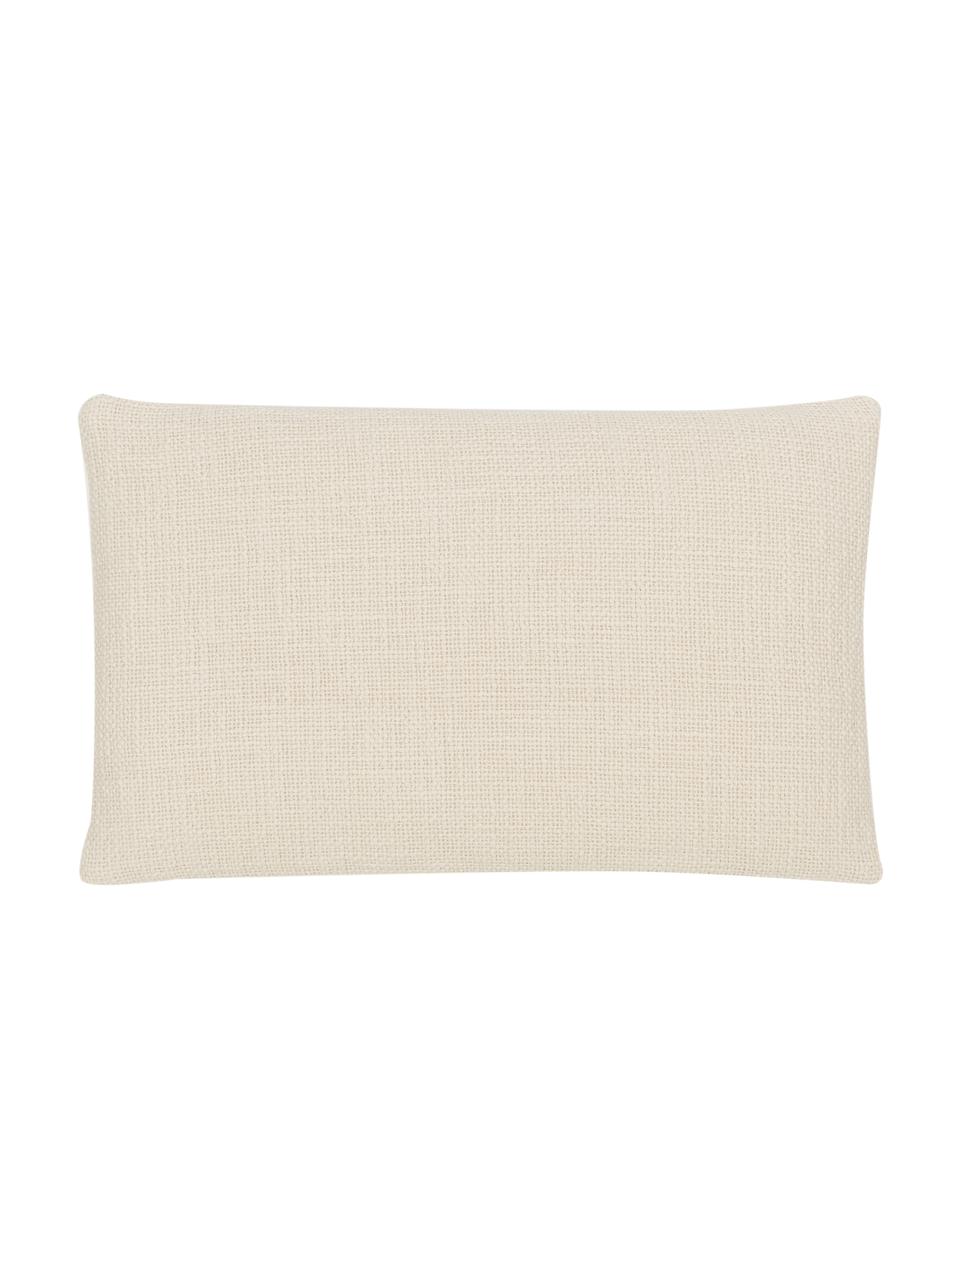 Poszewka na poduszkę Anise, 100% bawełna, Kremowobiały, S 30 x D 50 cm